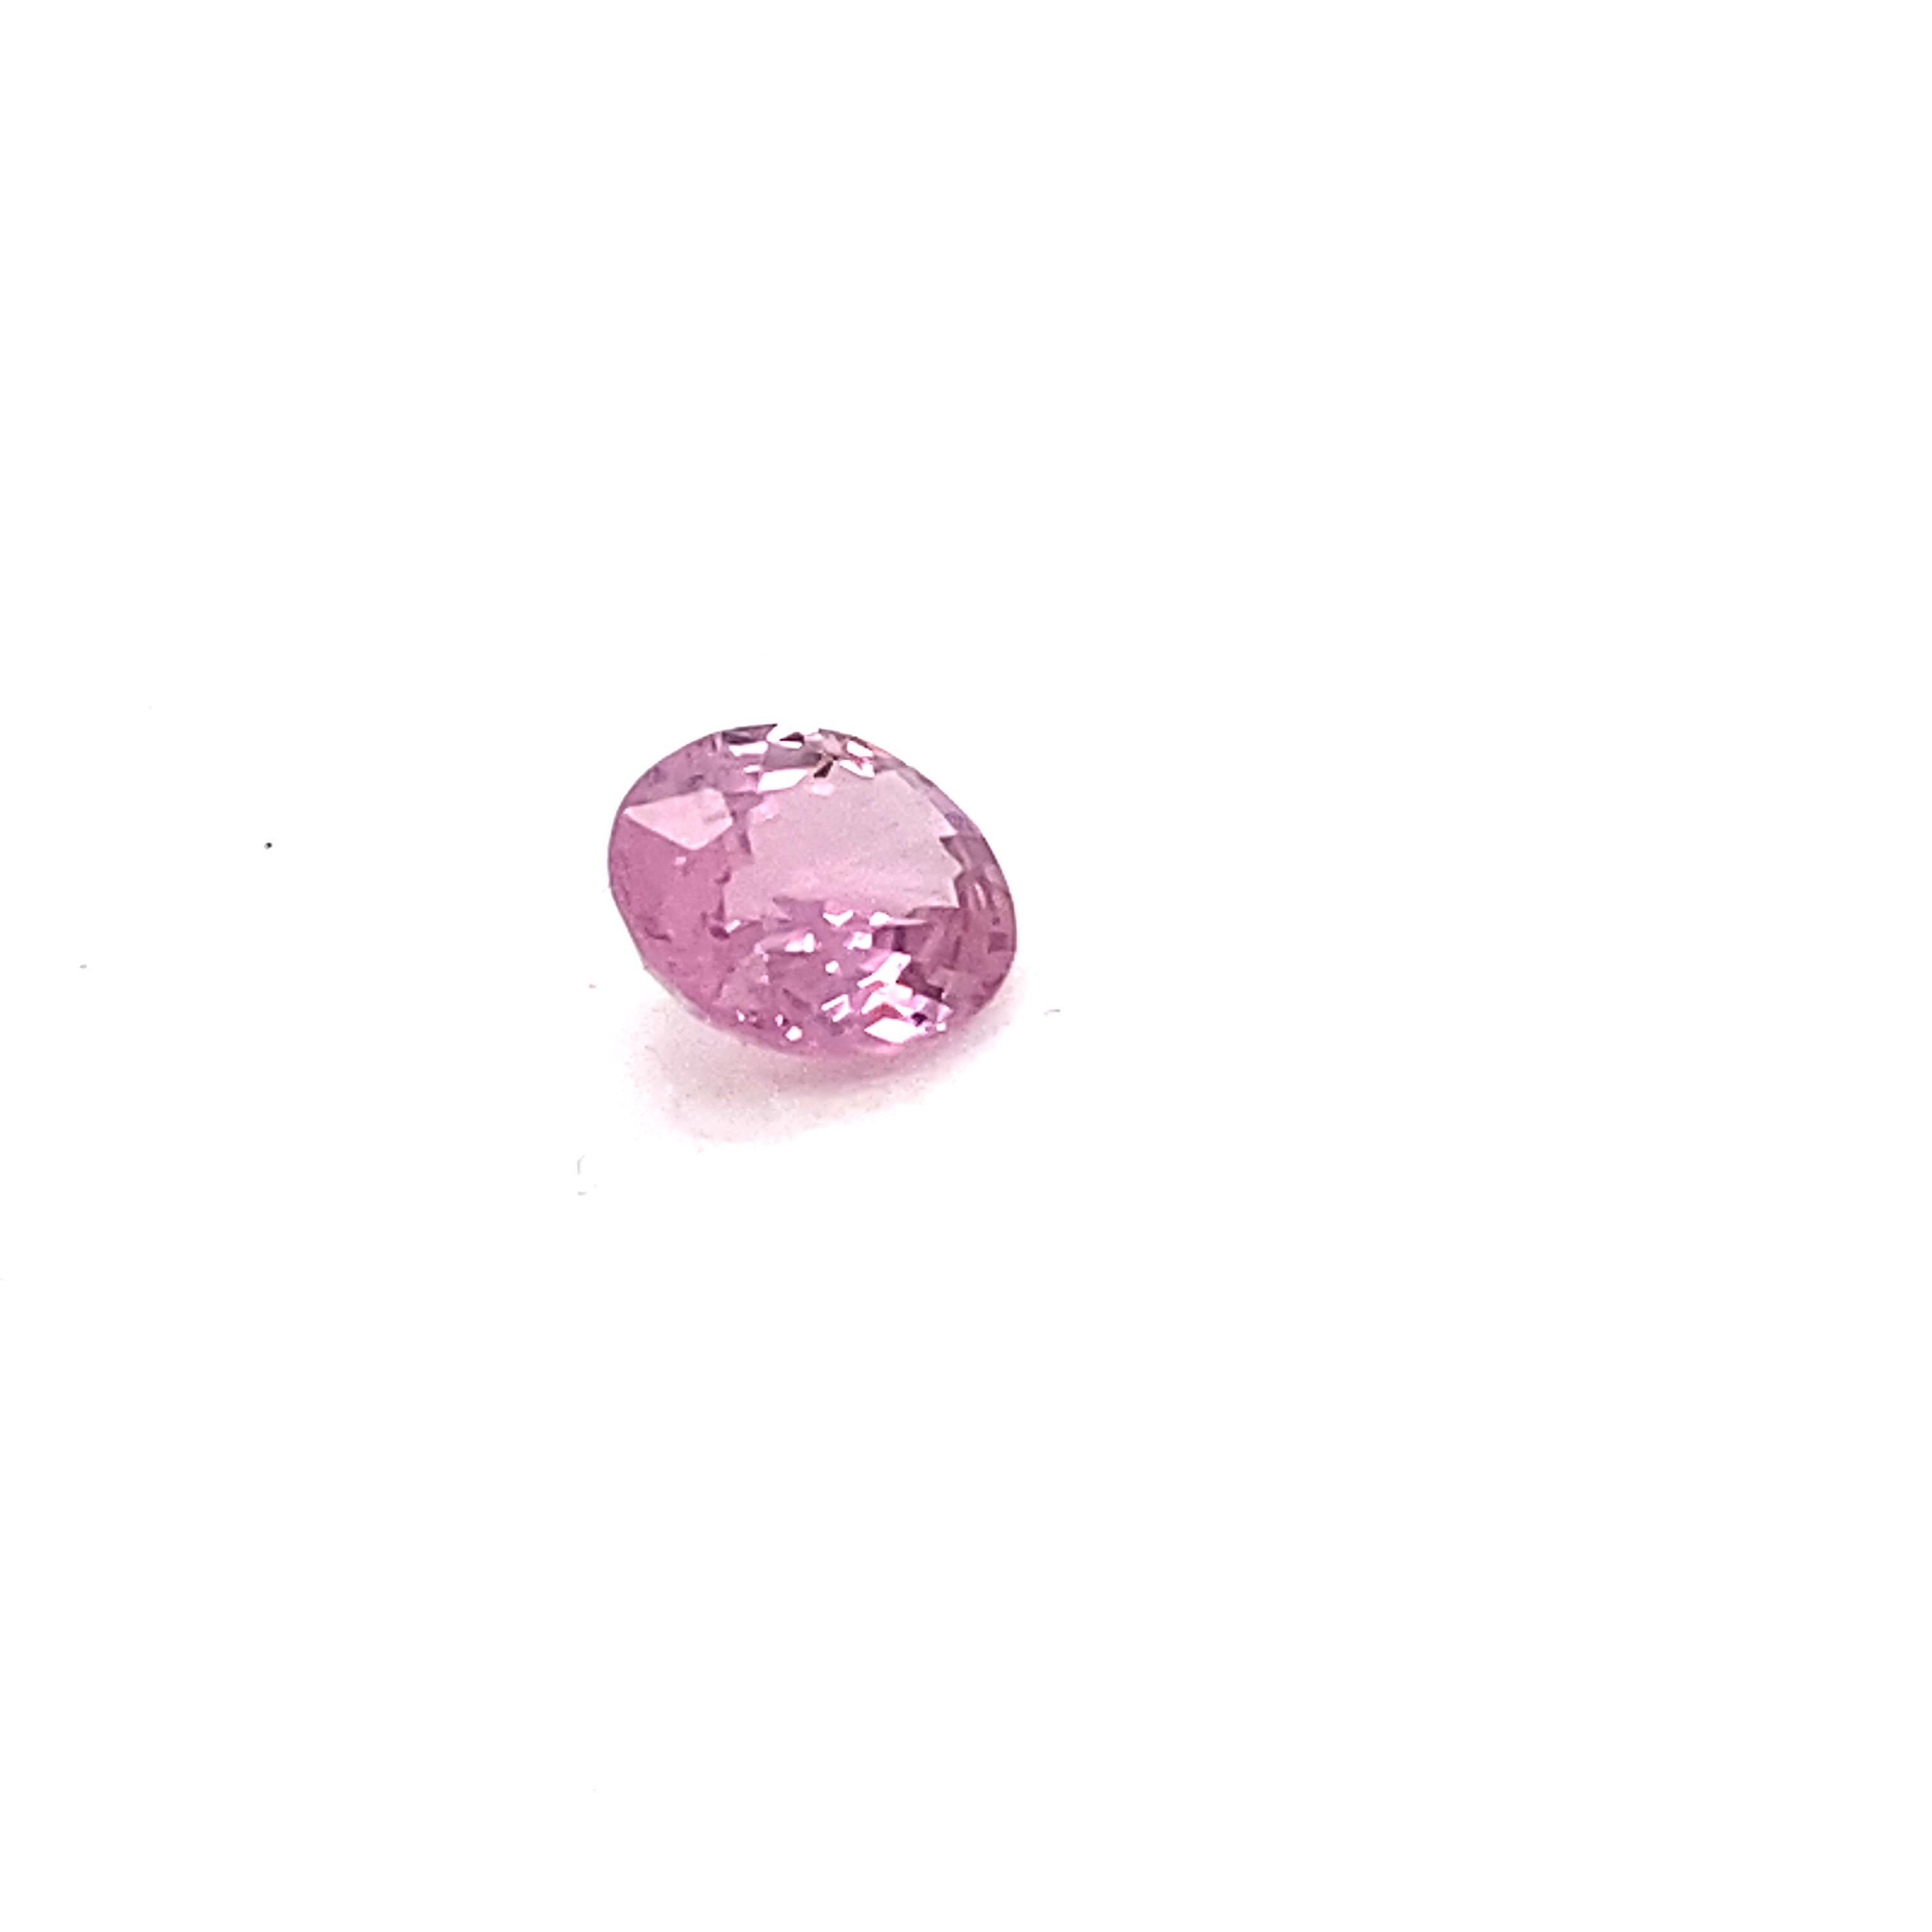 2.0 Carat Oval Shape Natural Pink Spinel Loose Gemstone For Sale 1